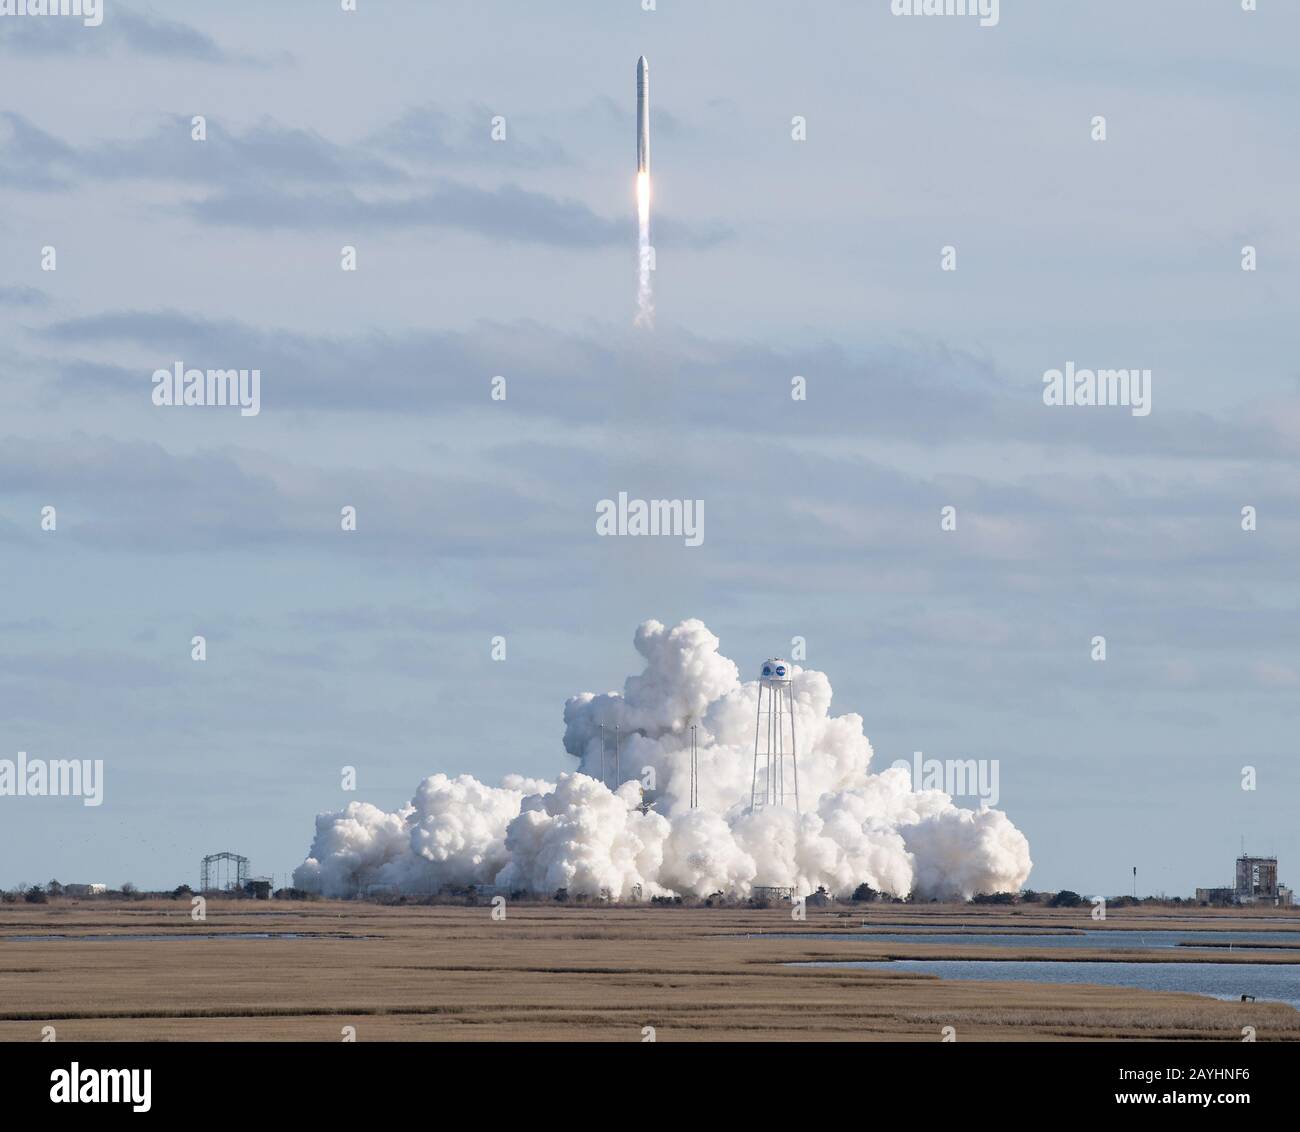 Isla Wallops, Estados Unidos. 15 de febrero de 2020. El cohete Northrop Grumman Antares, con la nave espacial Cygnus reabastecerse a bordo, se lanza desde Pad-0A, el 15 de febrero de 2020, en las instalaciones de vuelo Wallops de la NASA en Virginia. La 13ª misión de reabastecimiento de carga contratada de Northrop Grumman para la NASA a la Estación Espacial Internacional entregará más de 7,500 libras de ciencia e investigación, suministros para la tripulación y equipo para vehículos al laboratorio orbital y a su tripulación. Foto de la NASA por Aubrey Gemignani/UPI crédito: UPI/Alamy Live News Foto de stock